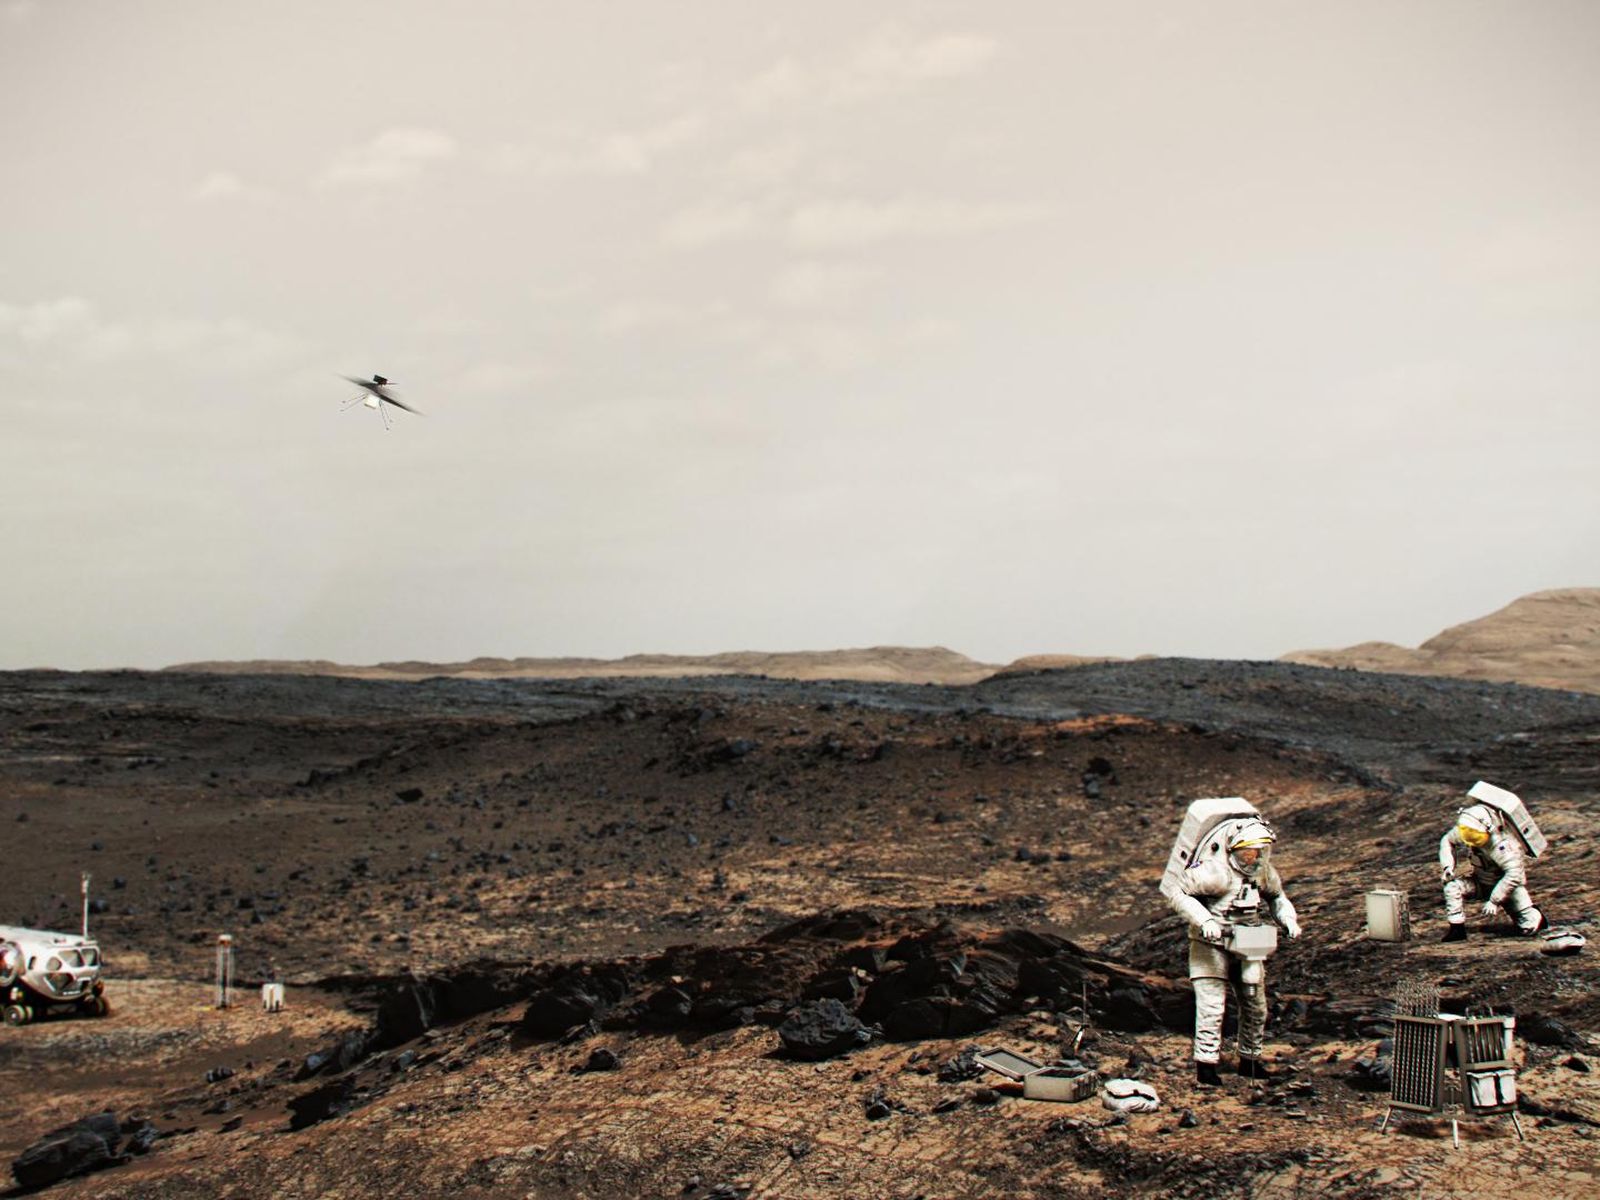 Los astronautas que trabajan en la superficie de Marte podrían emplear un helicóptero (visto arriba como el trabajo en la superficie marciana) similar al Ingenuity Mars Helicopter.